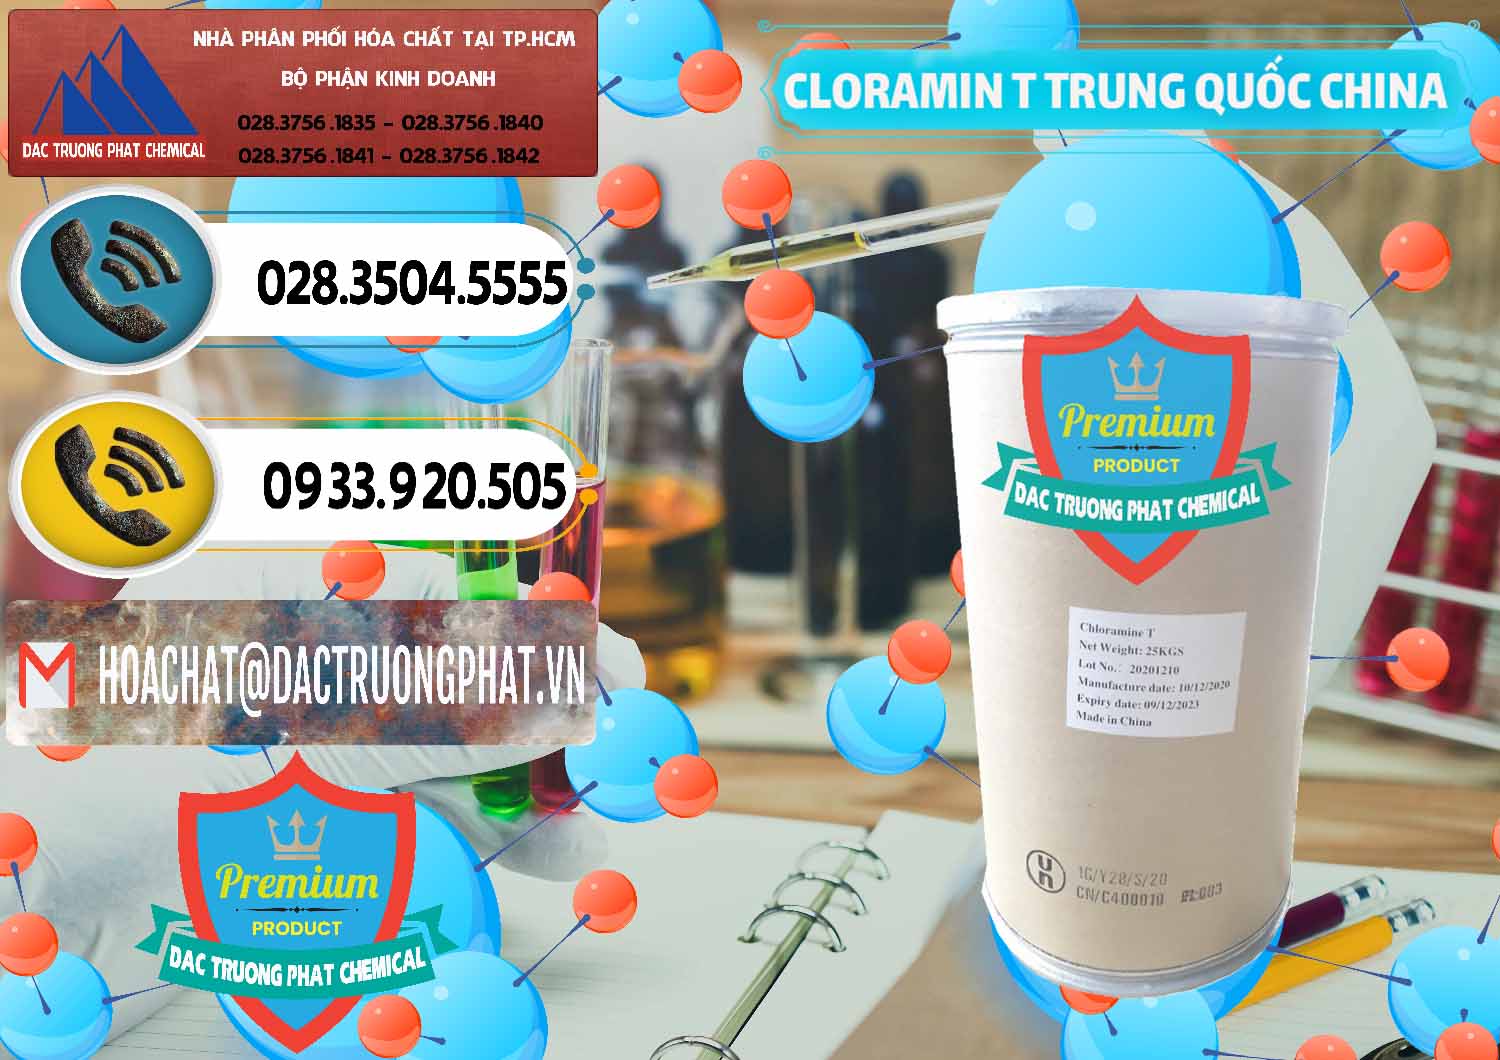 Cty chuyên phân phối & bán Cloramin T Khử Trùng, Diệt Khuẩn Trung Quốc China - 0301 - Cty chuyên kinh doanh - phân phối hóa chất tại TP.HCM - hoachatdetnhuom.vn